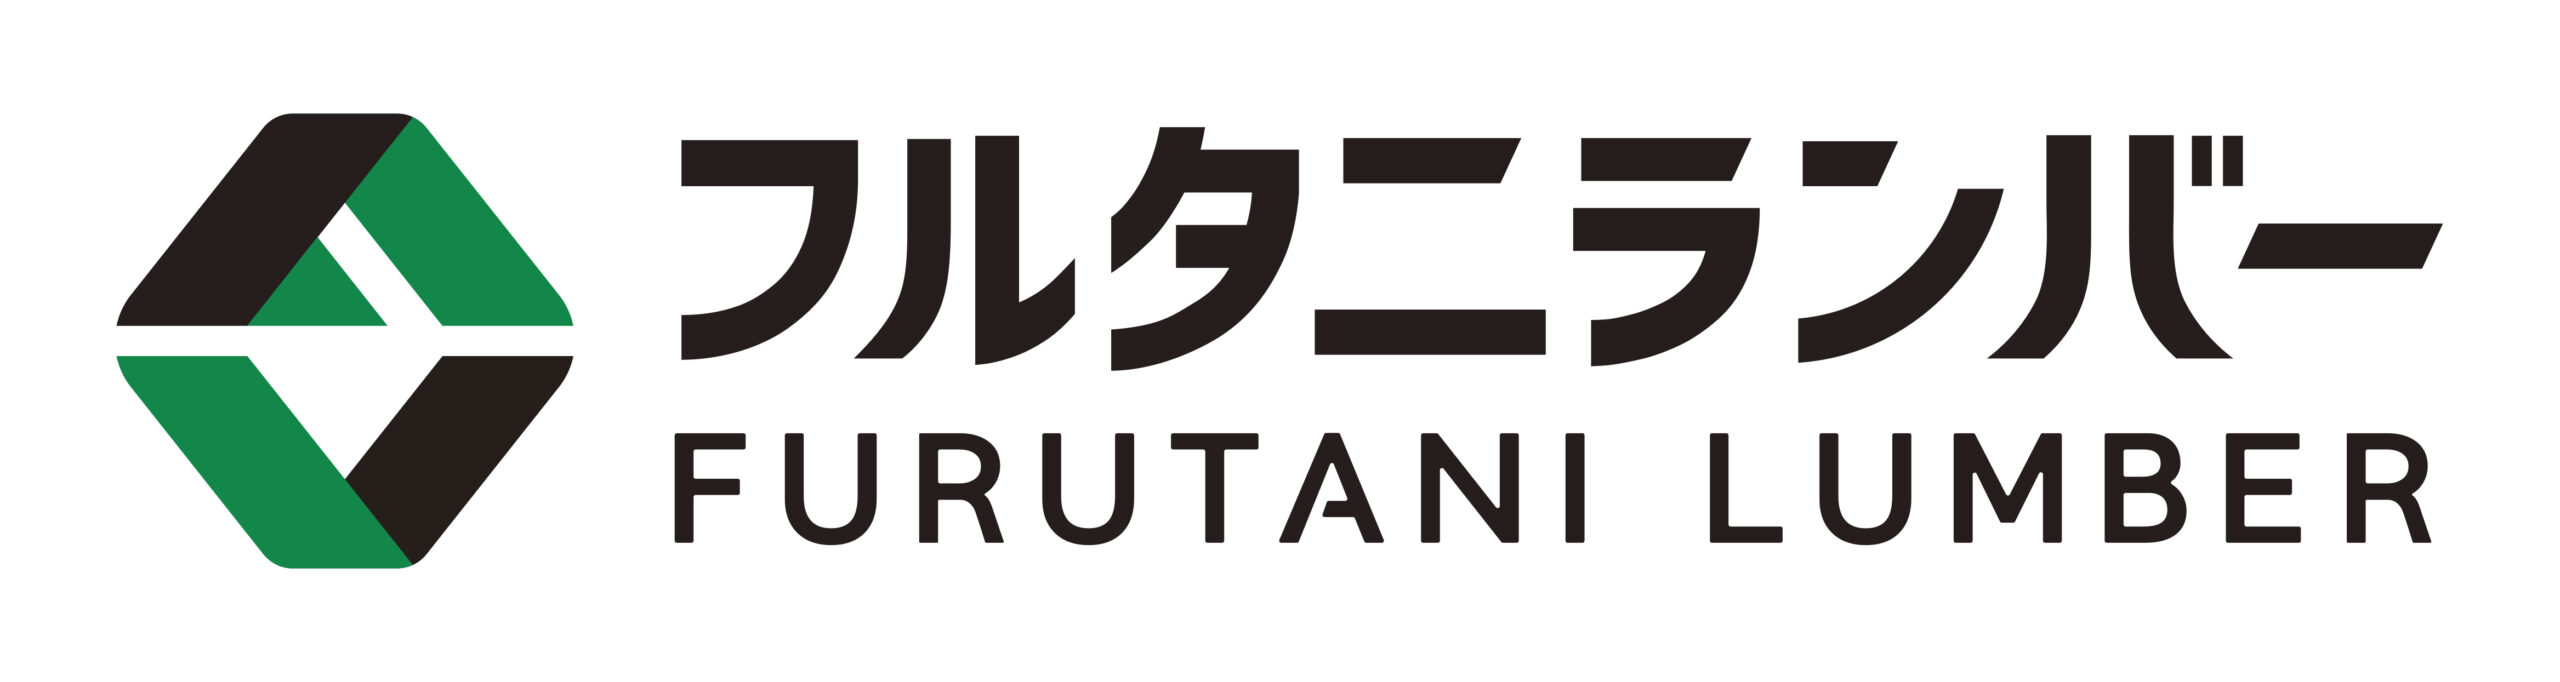 フルタニランバー株式会社 FURUTANI LUMBER